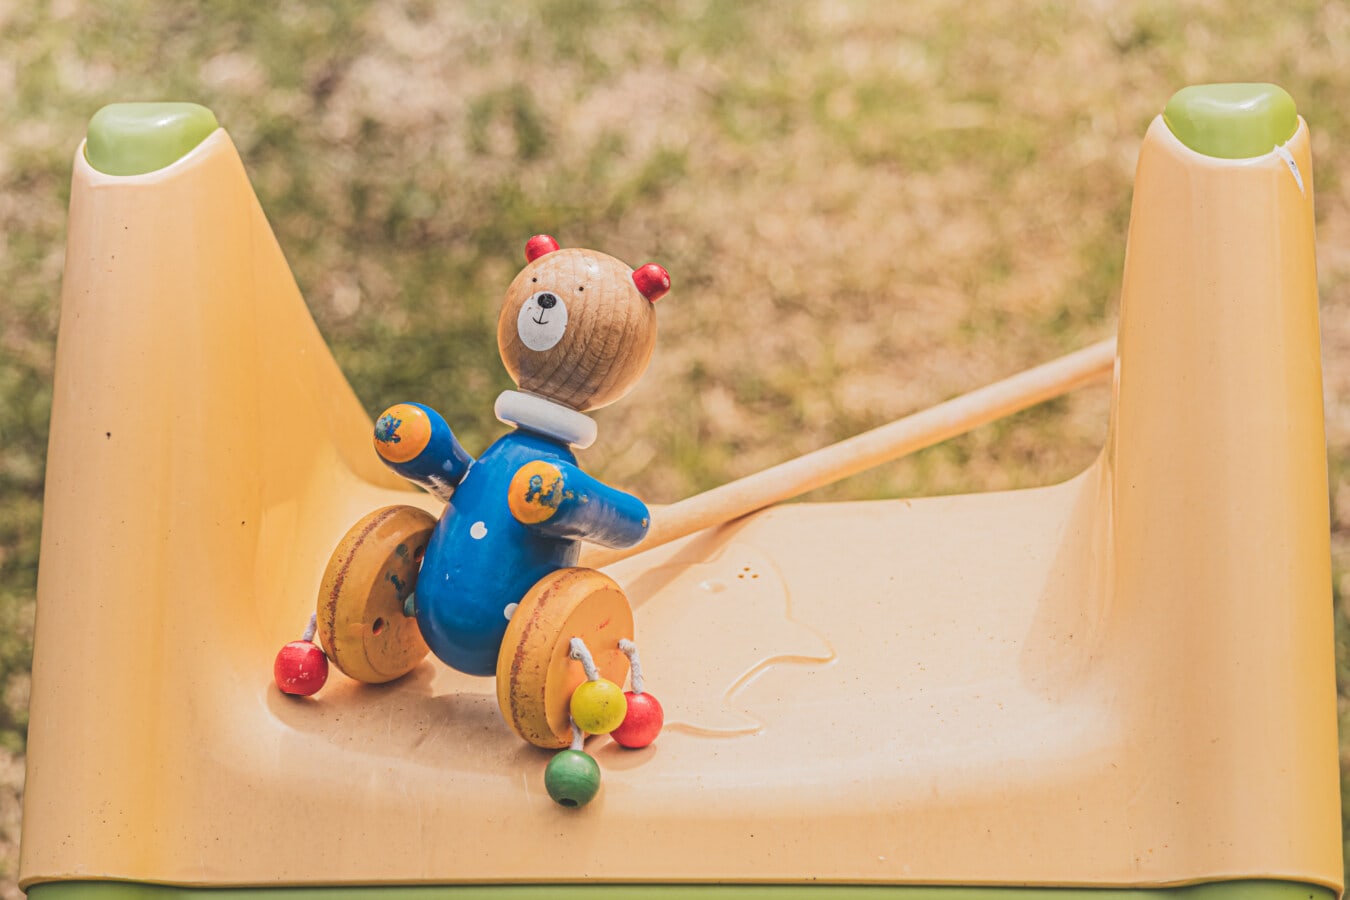 Parque infantil, urso, colorido, brinquedo, de madeira, diversão, verão, plástico, ao ar livre, cor